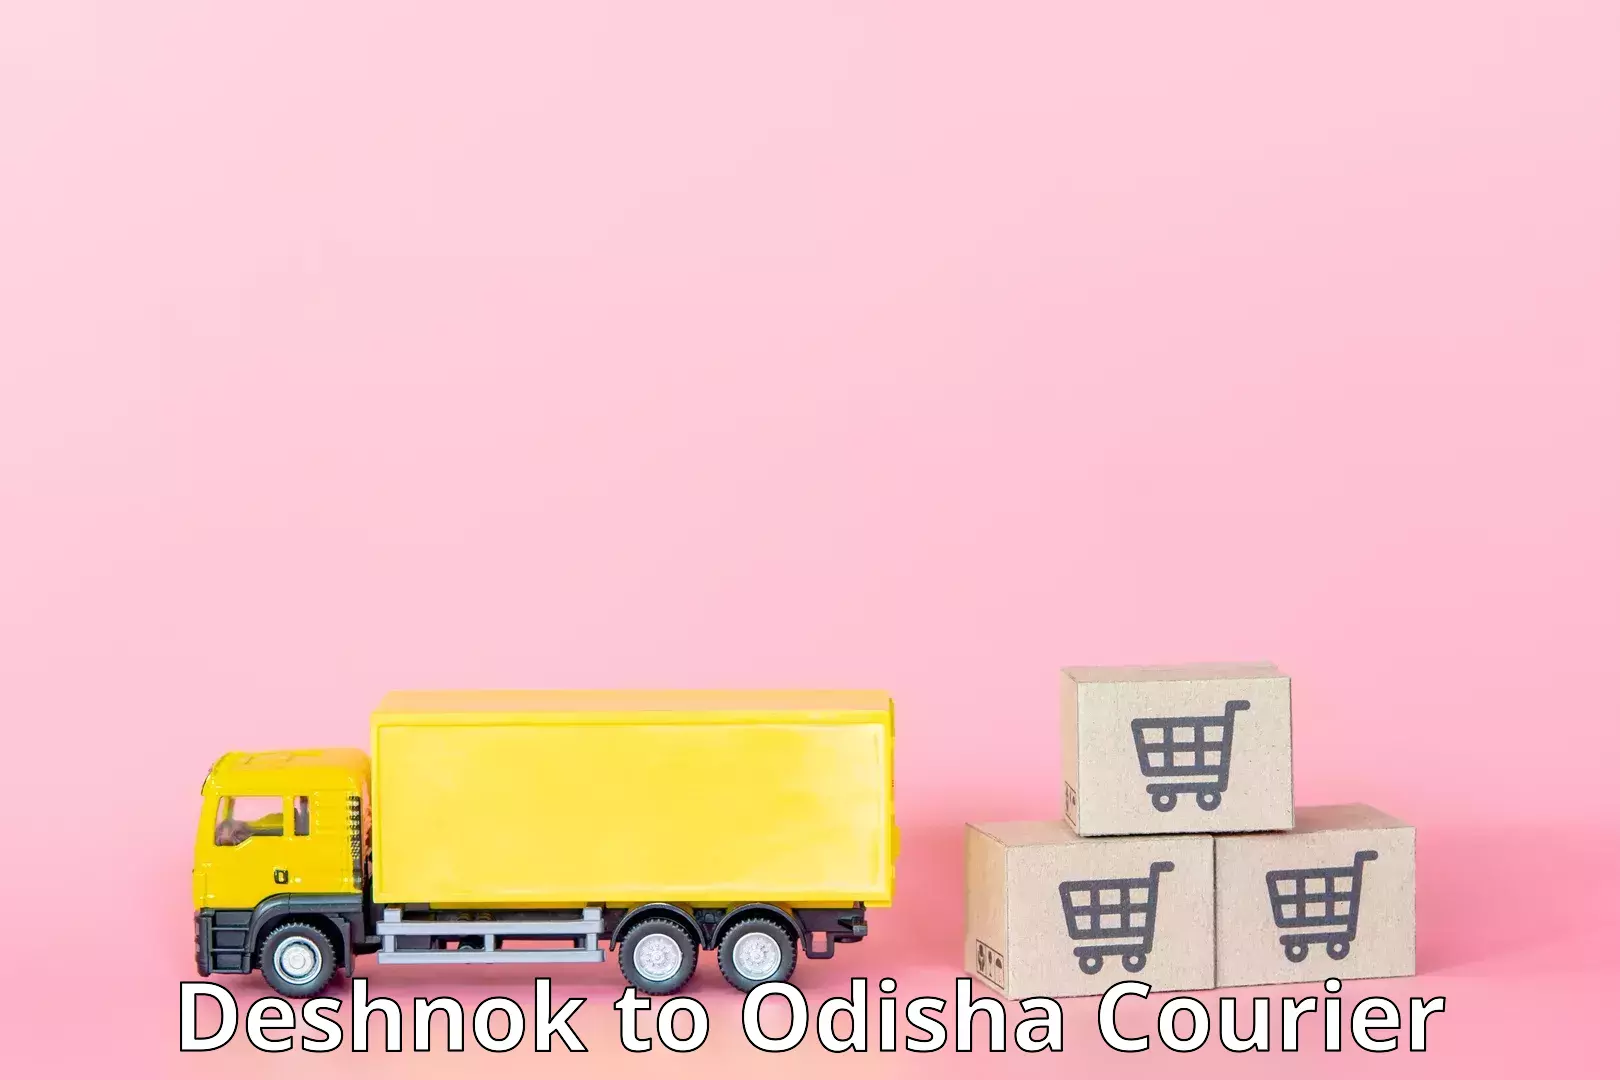 Next-day freight services Deshnok to Odisha